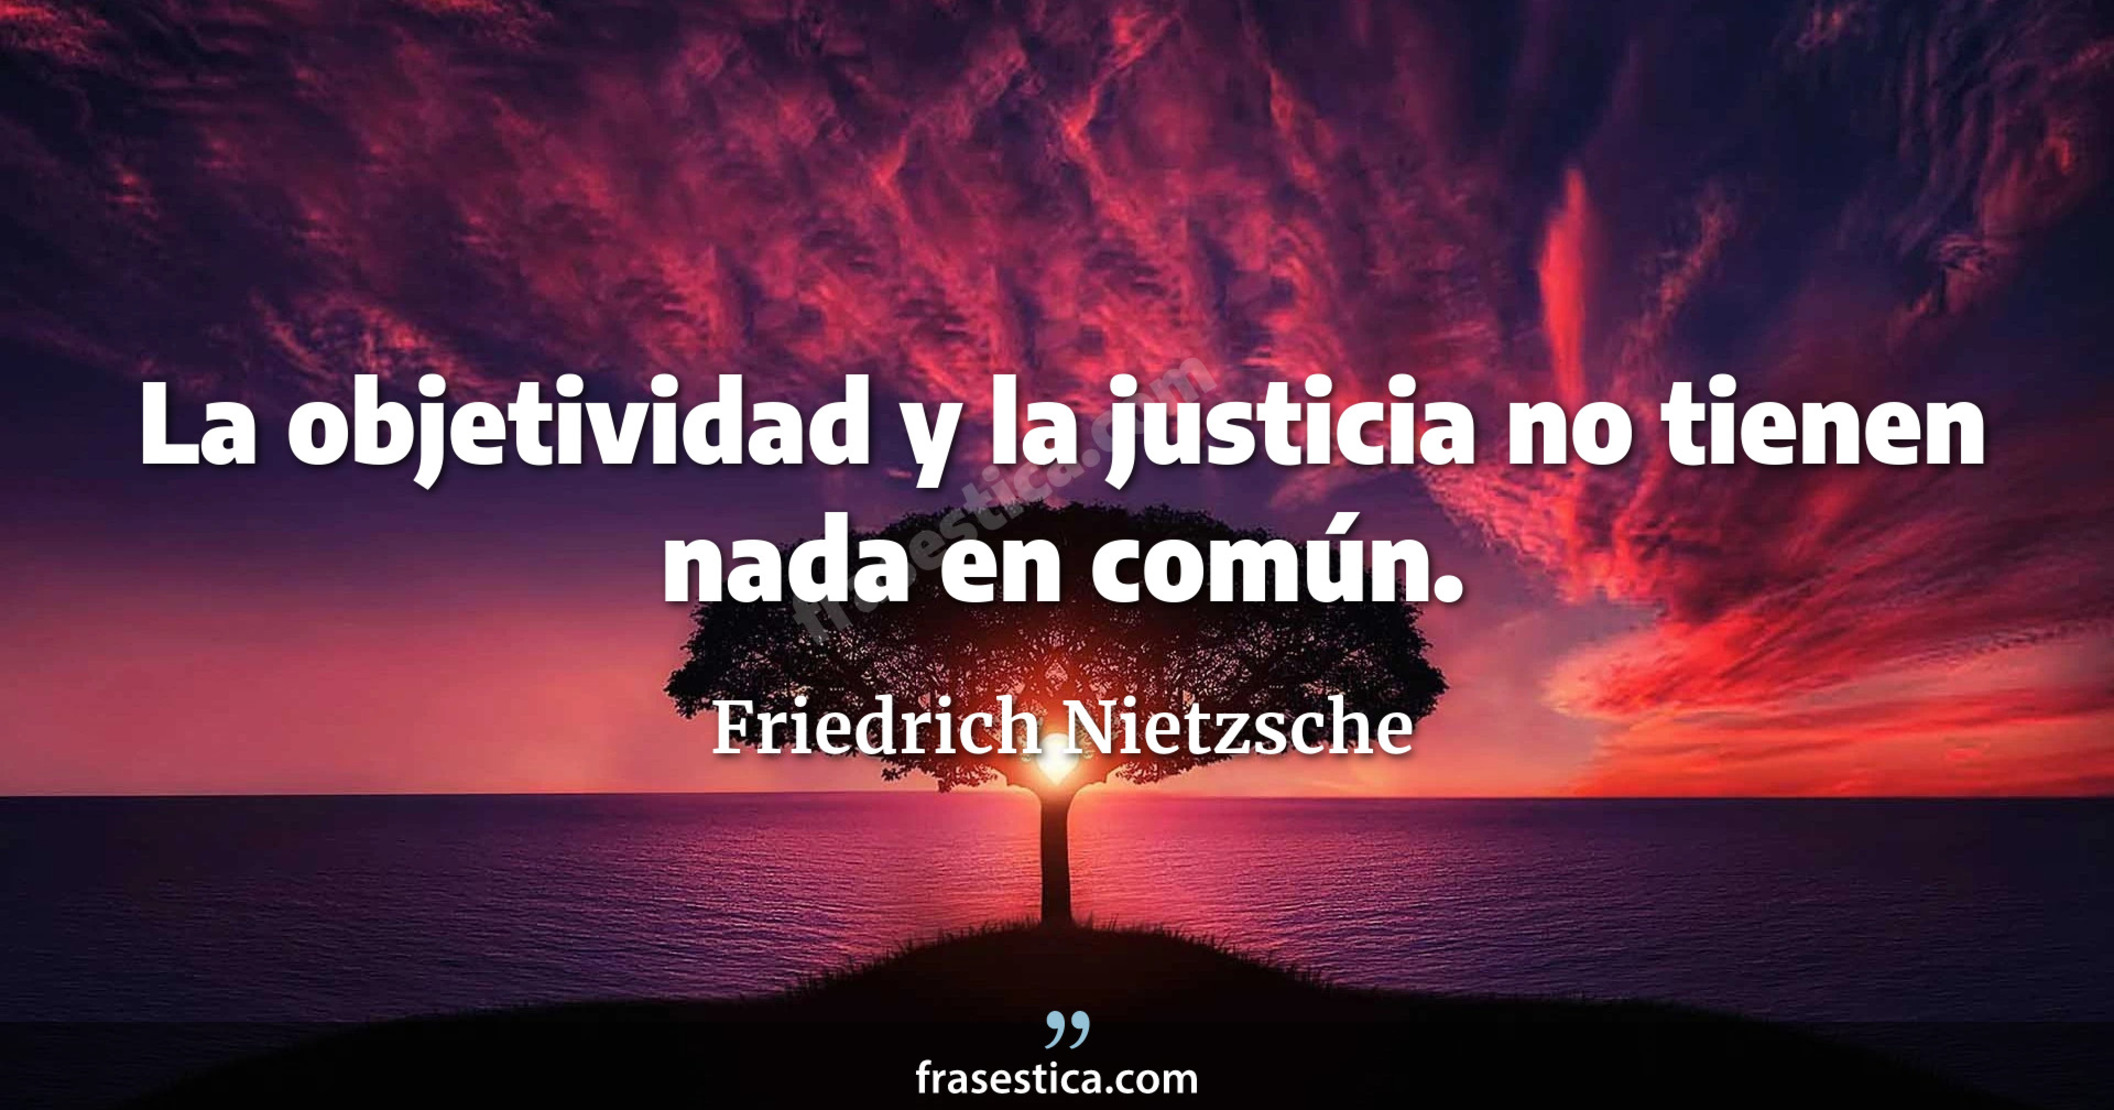 La objetividad y la justicia no tienen nada en común. - Friedrich Nietzsche